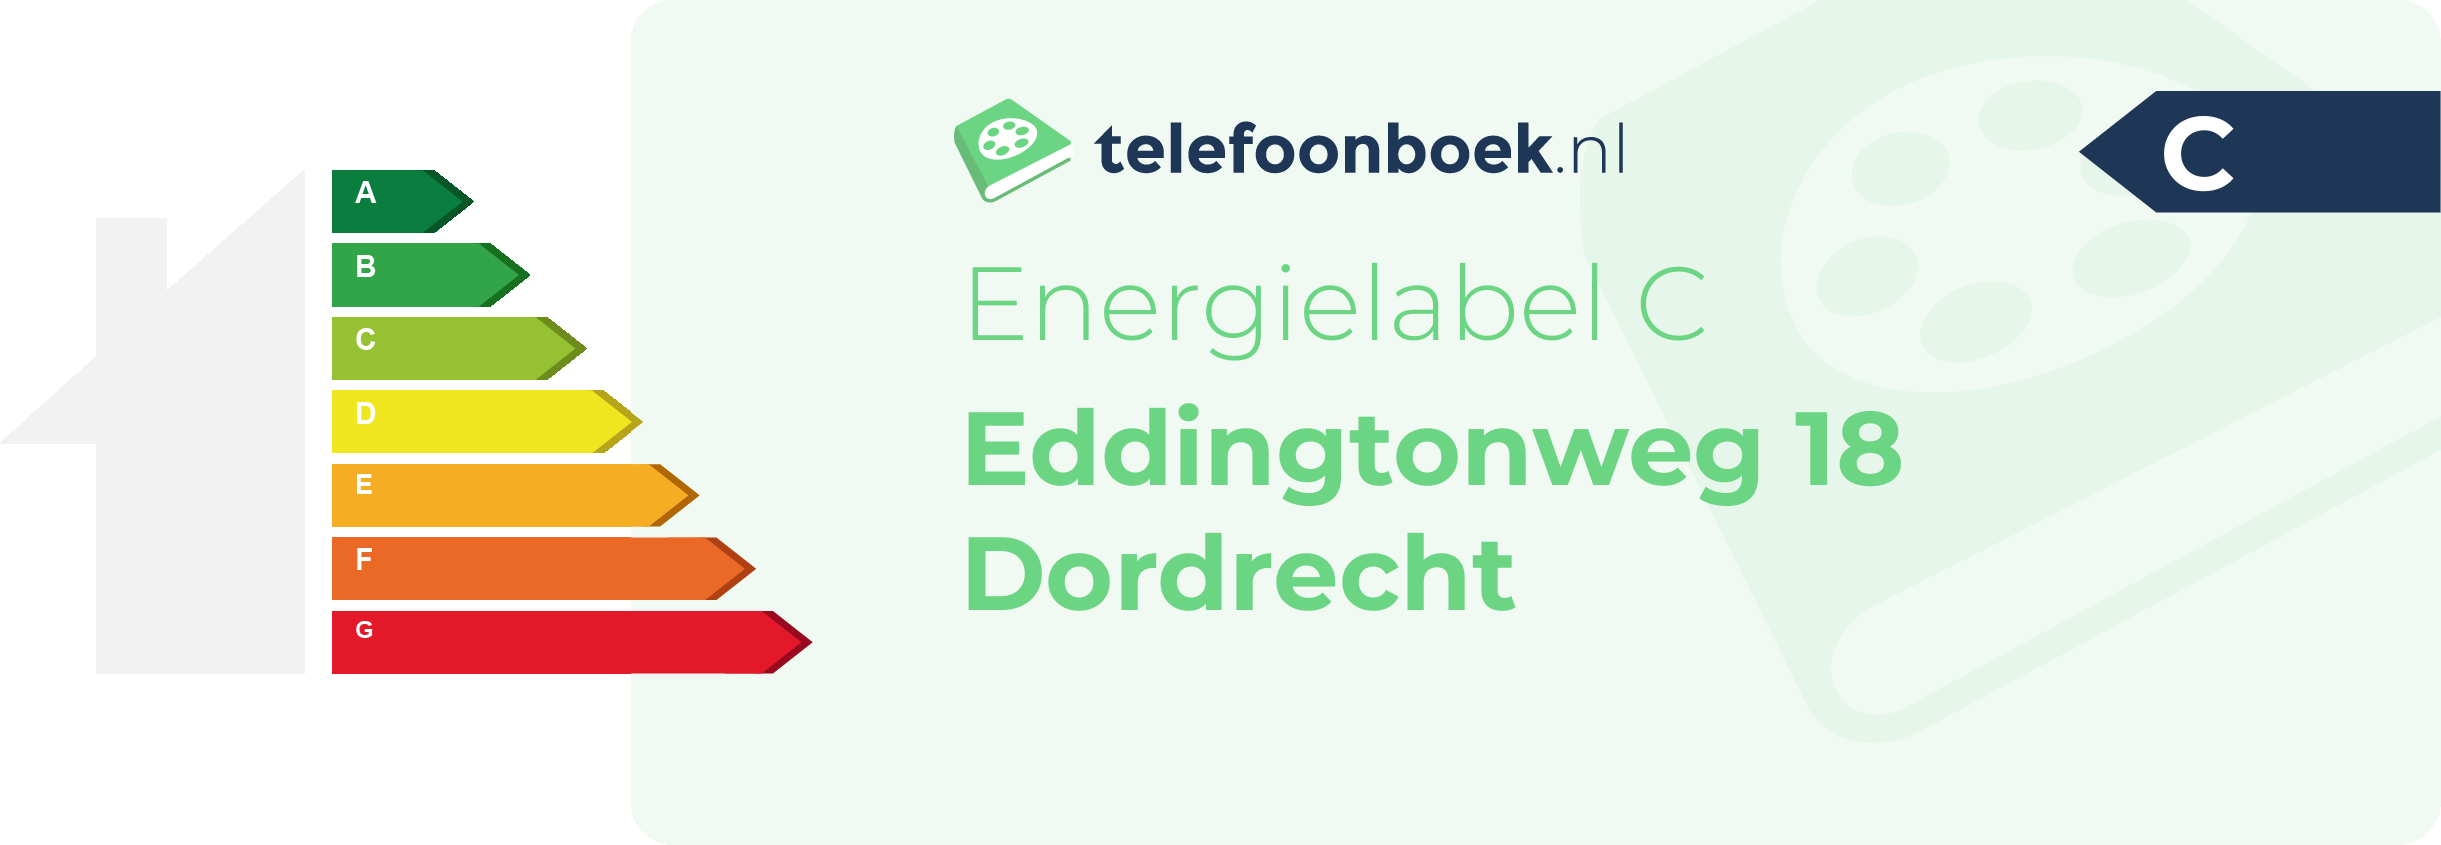 Energielabel Eddingtonweg 18 Dordrecht